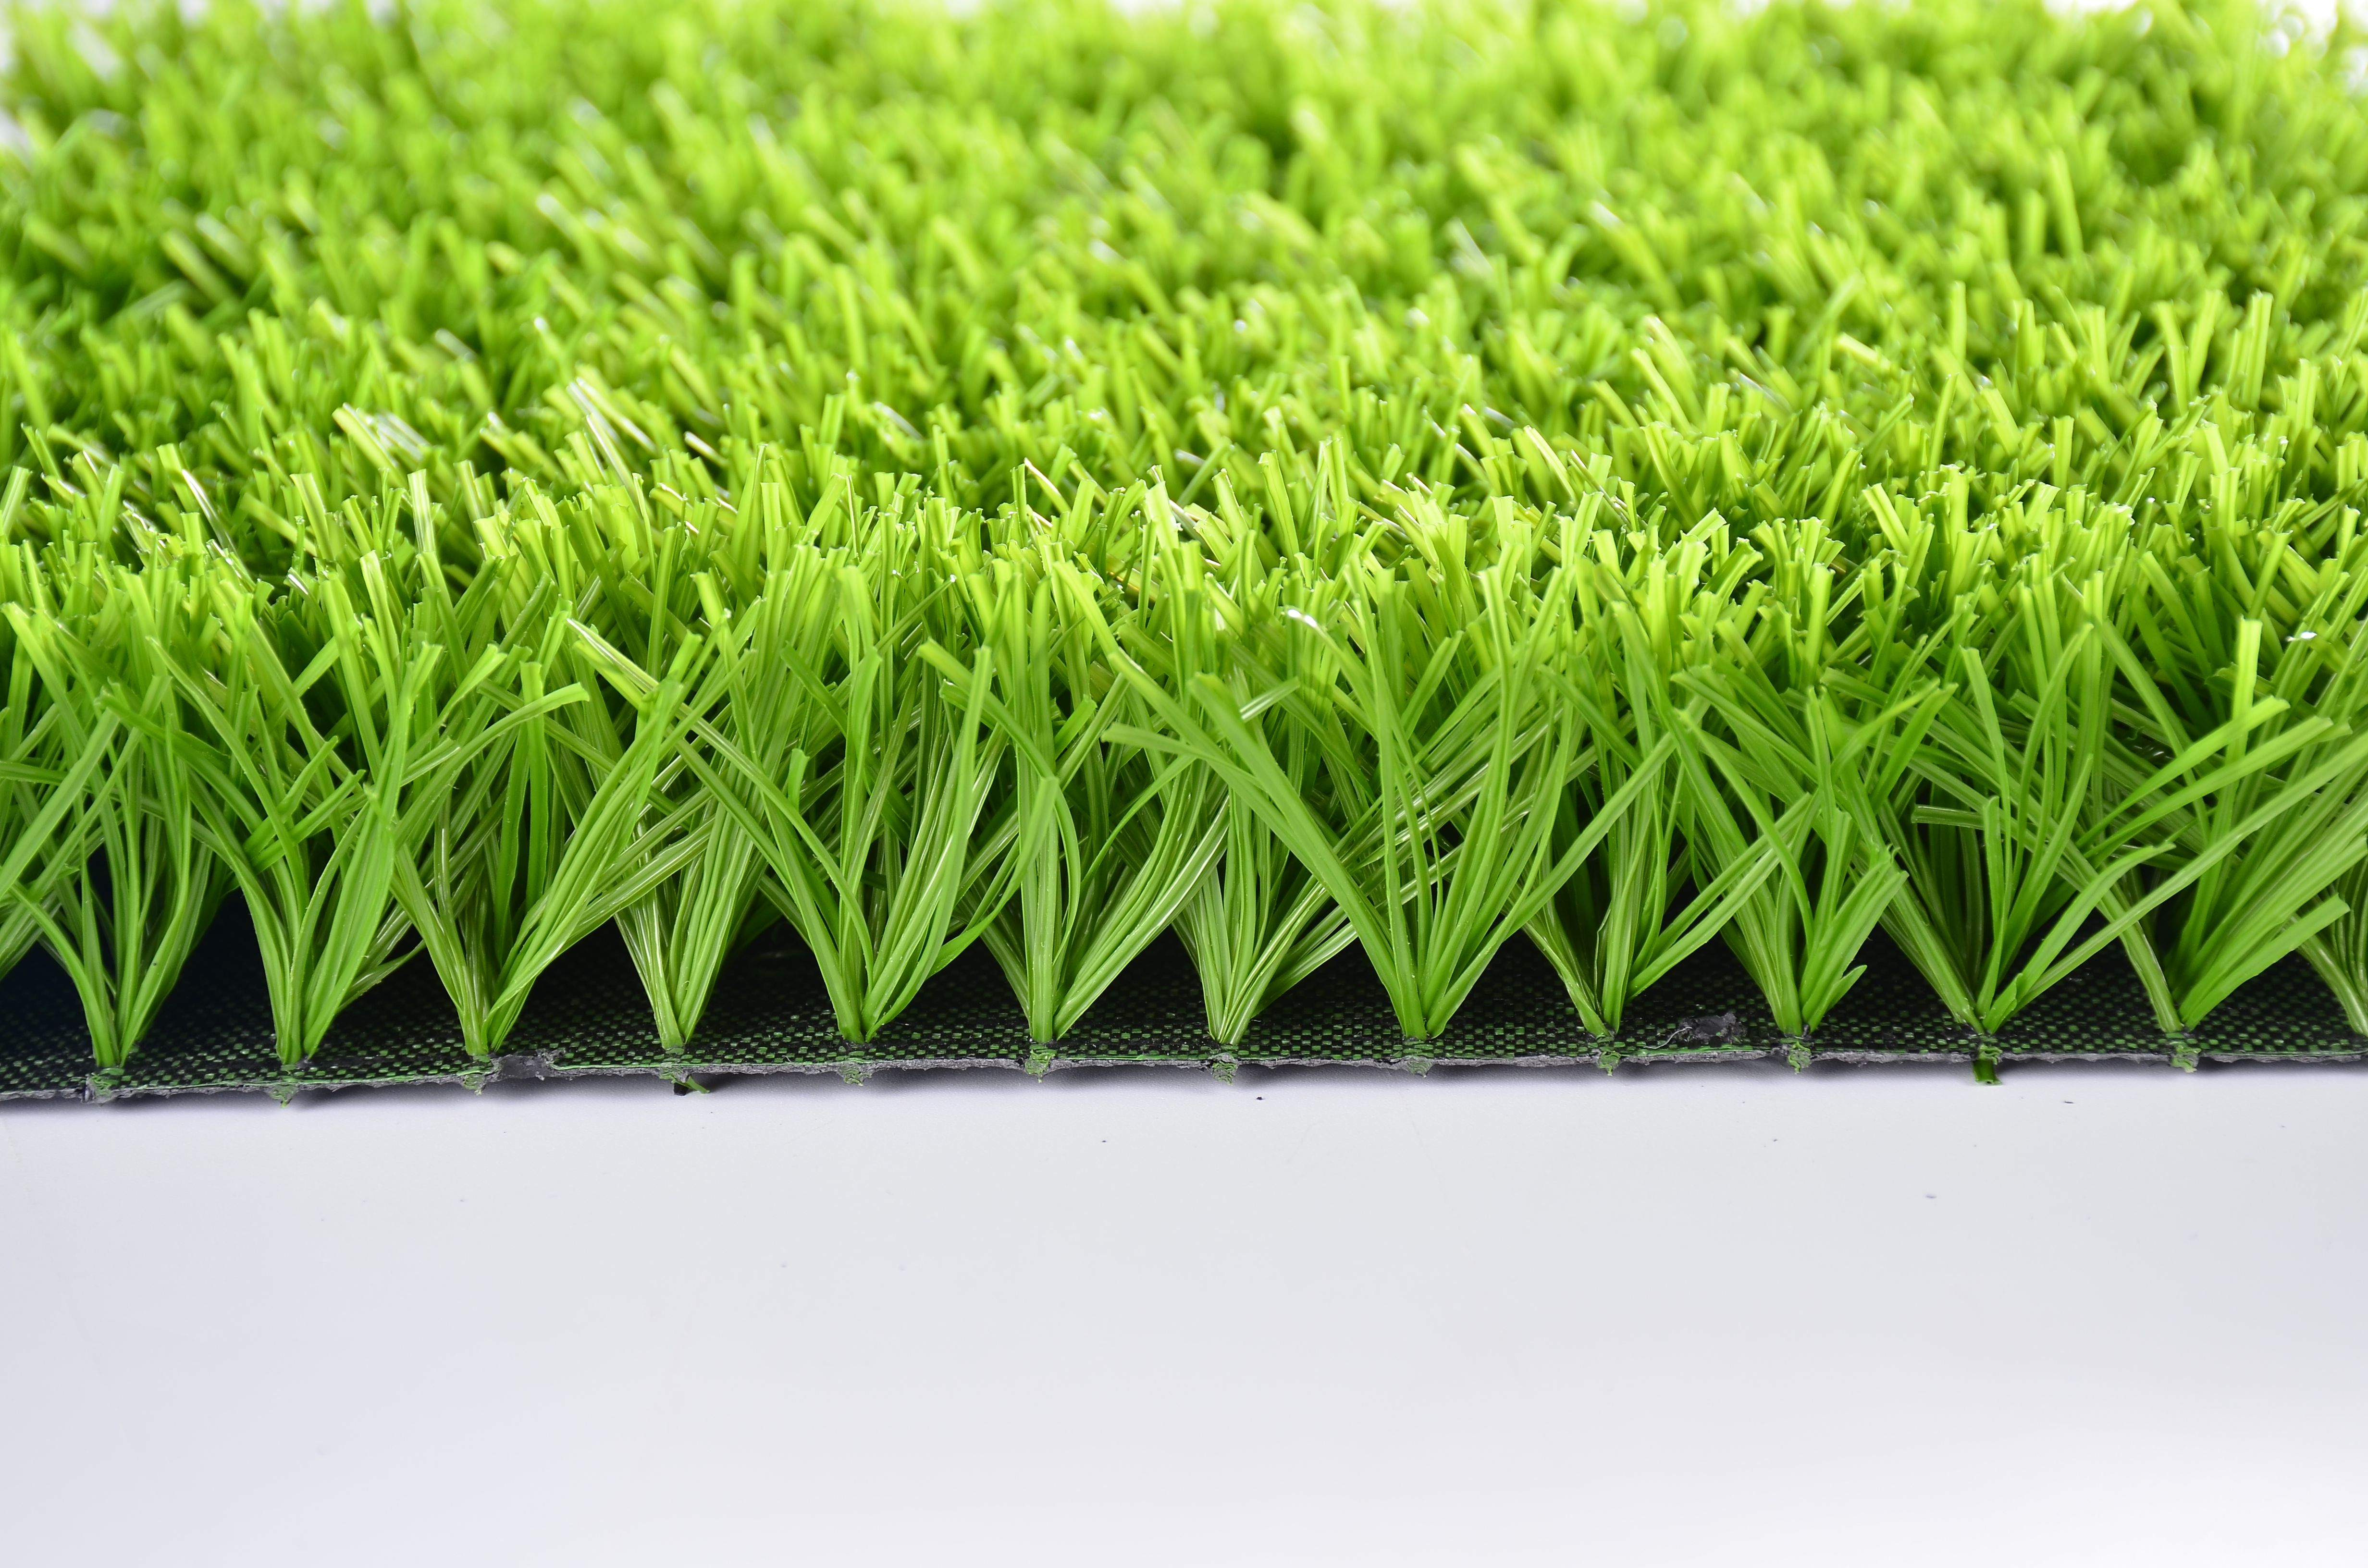 Entry-level football grass ENO-EC01